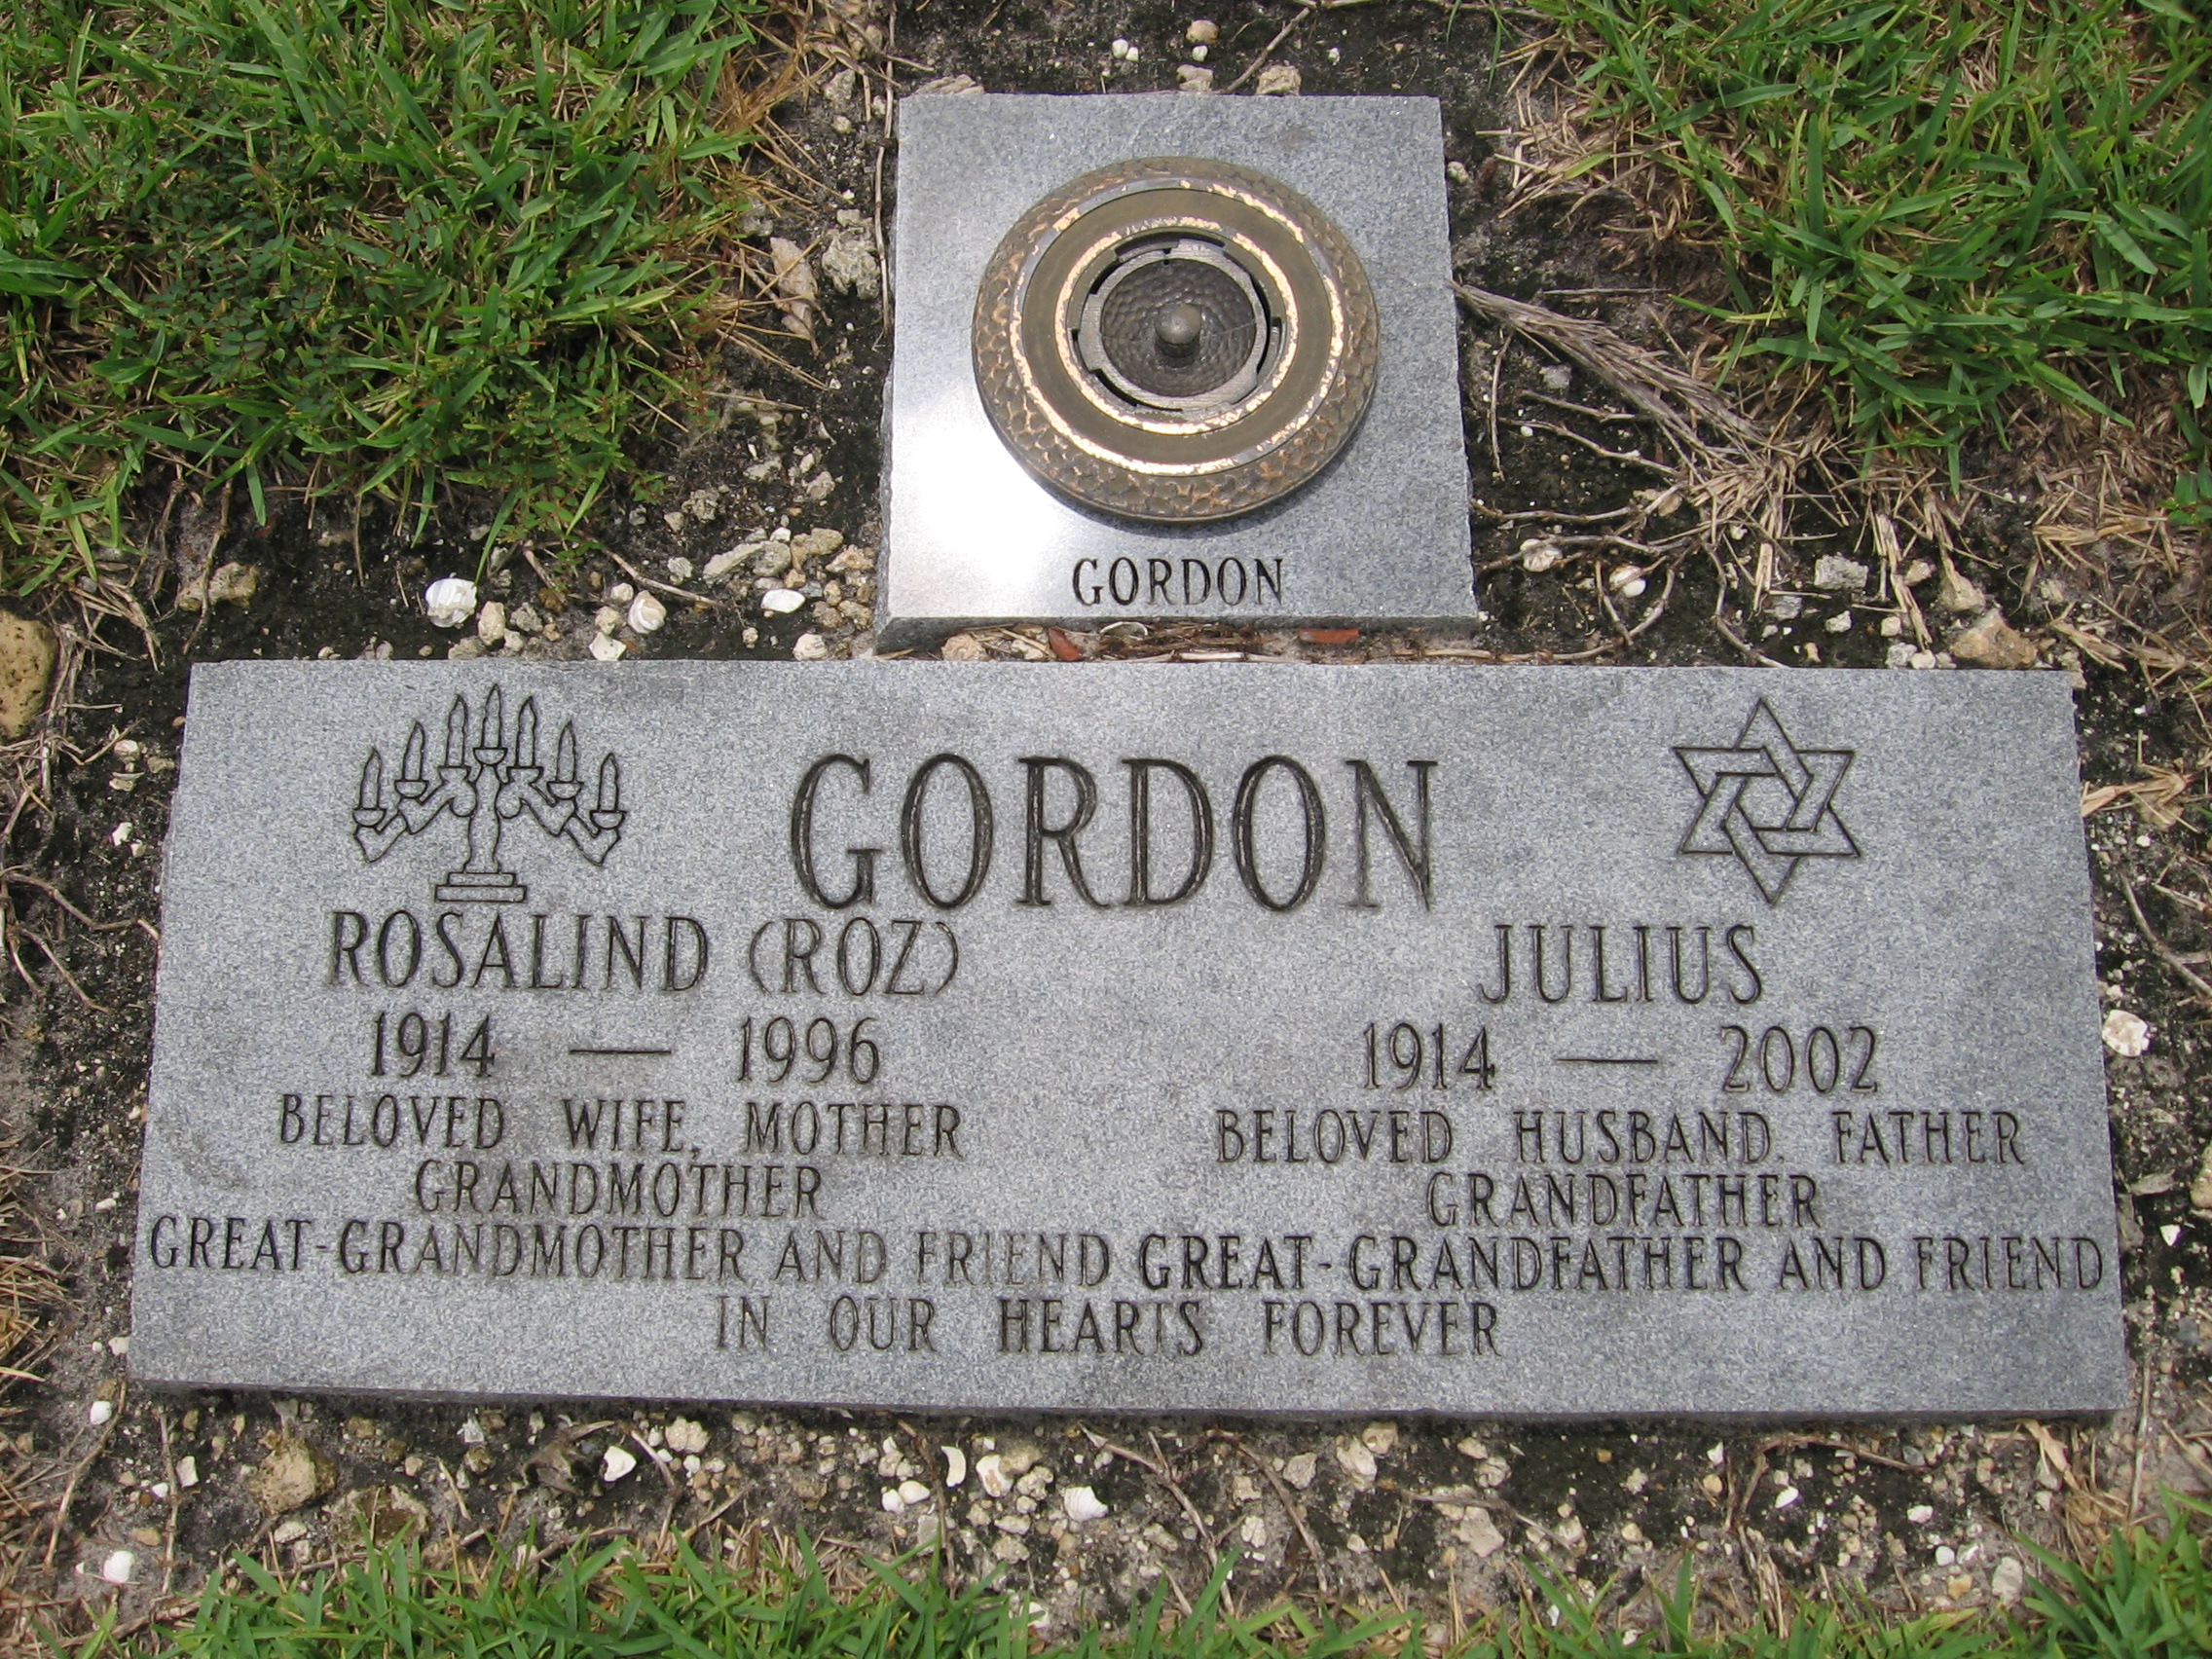 Julius Gordon